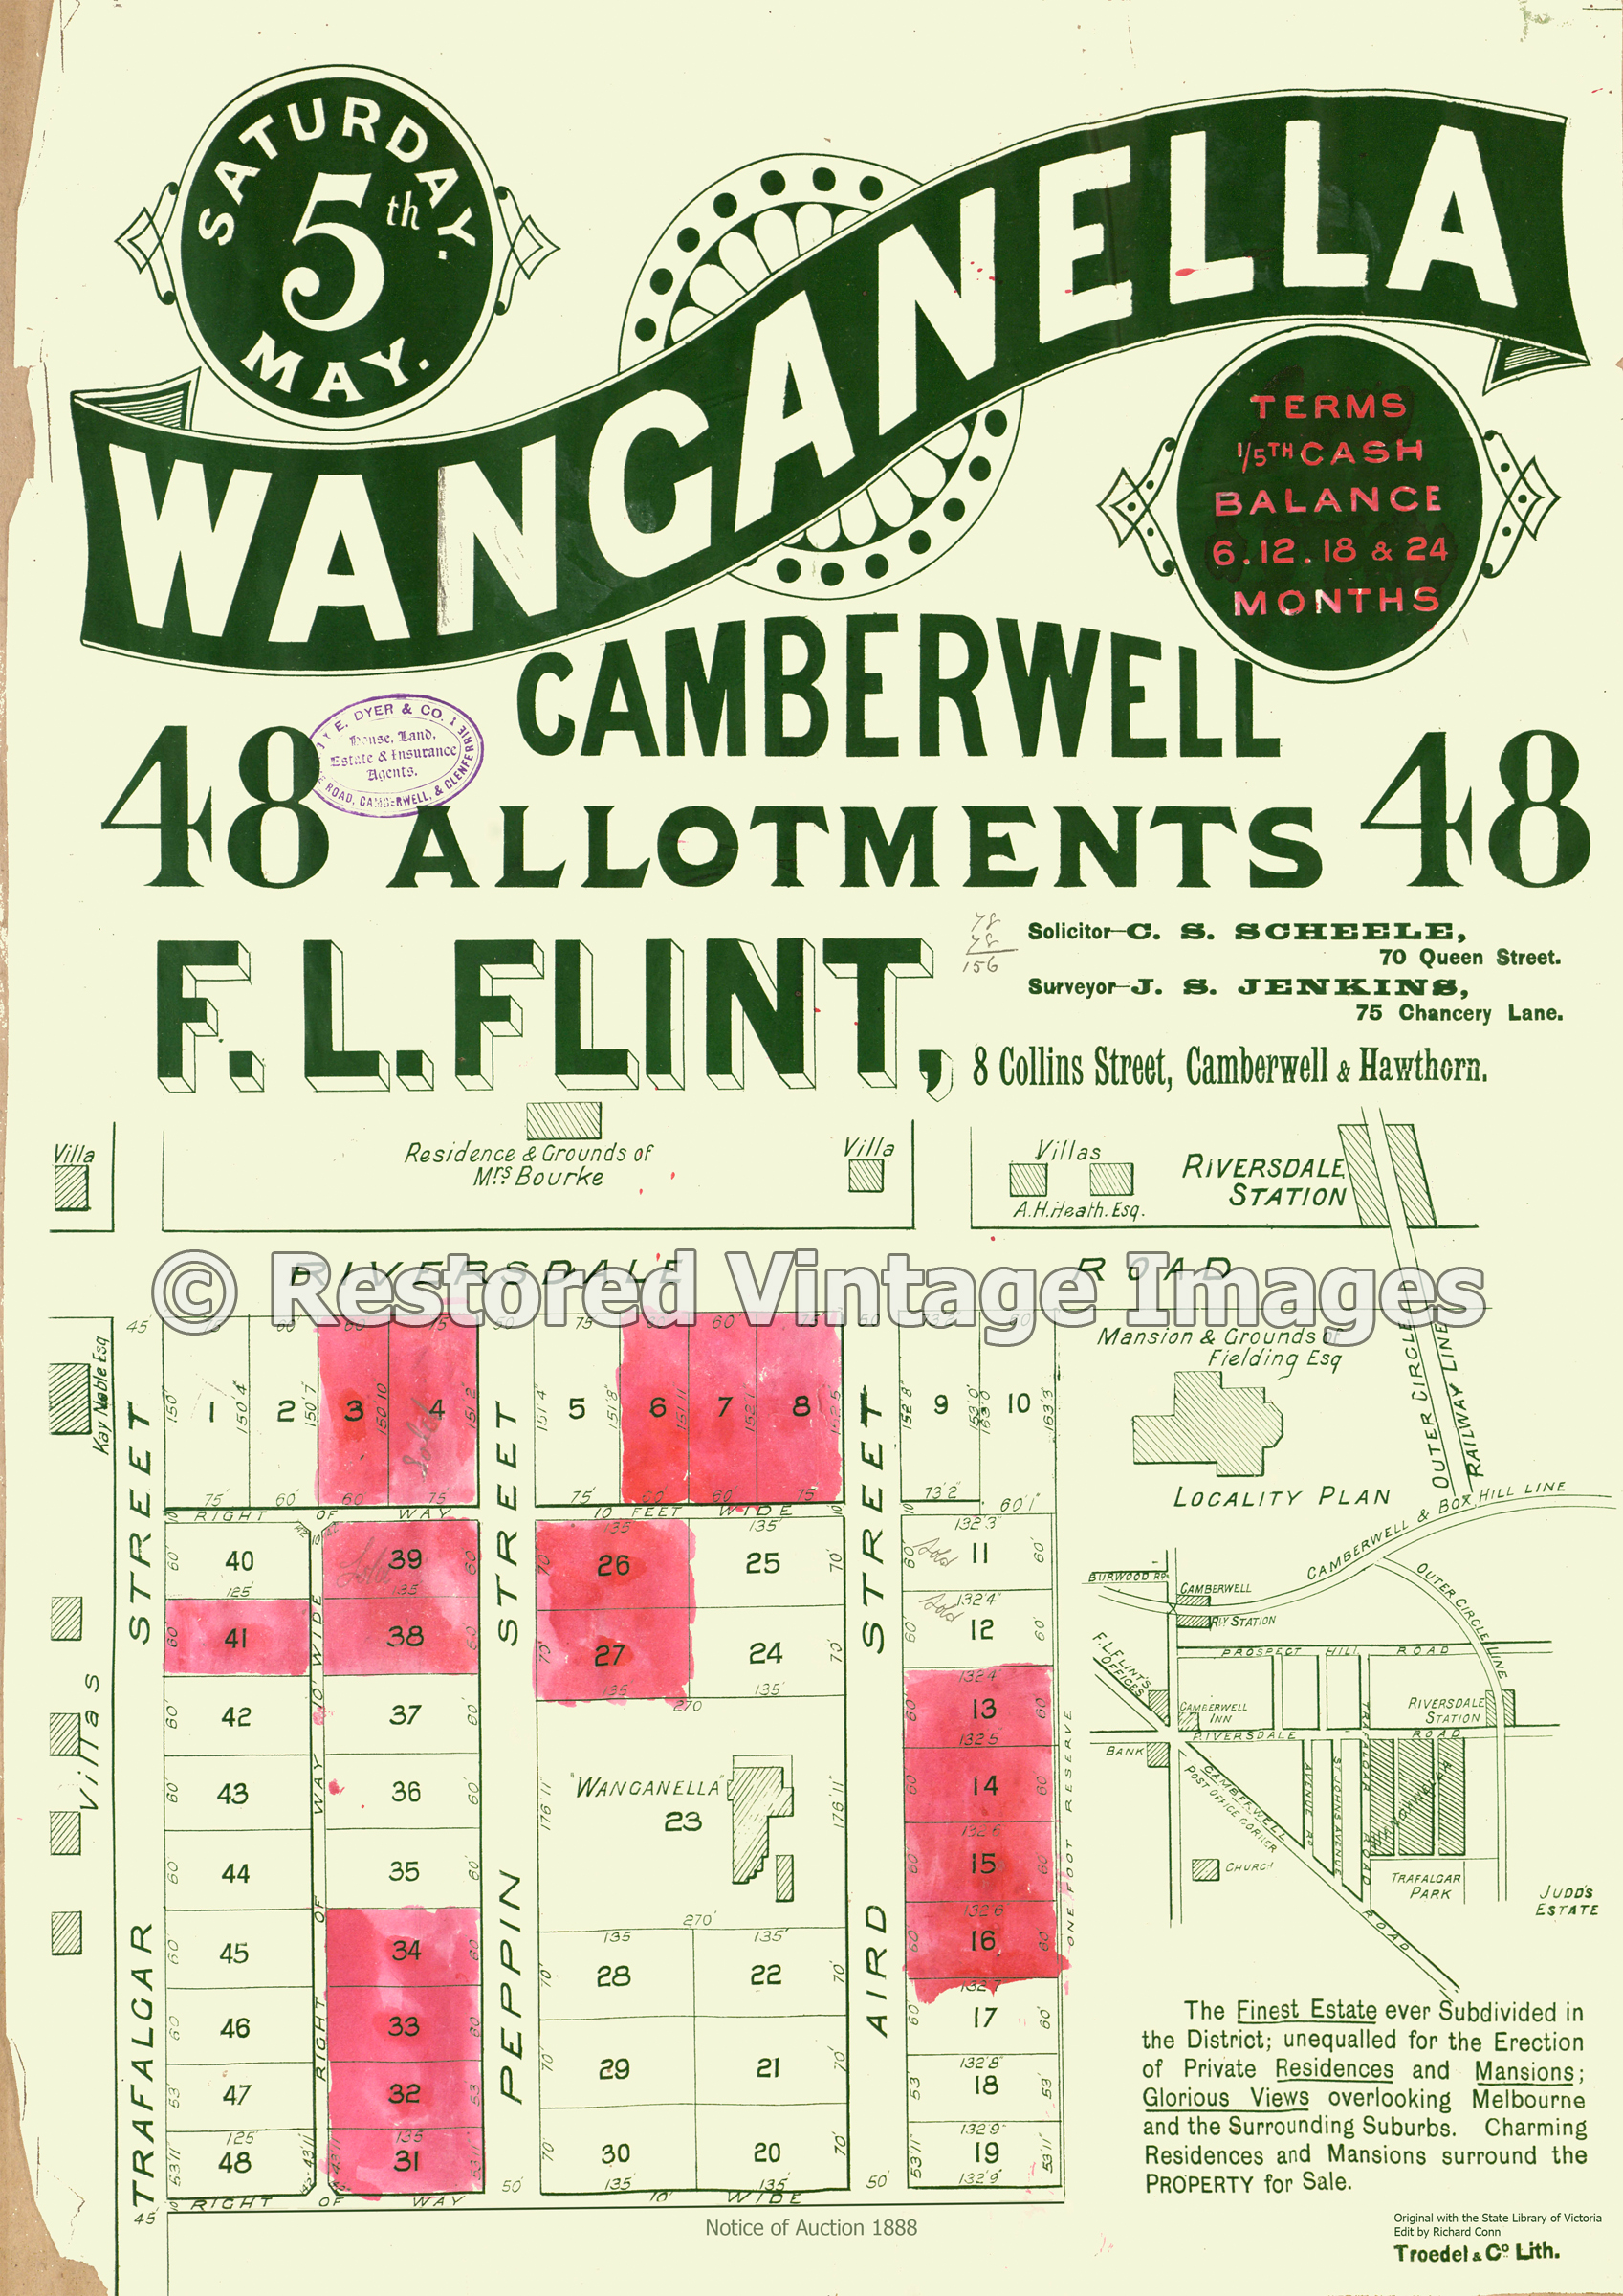 Wangaanella Estate 5th May, 1888 – Camberwell